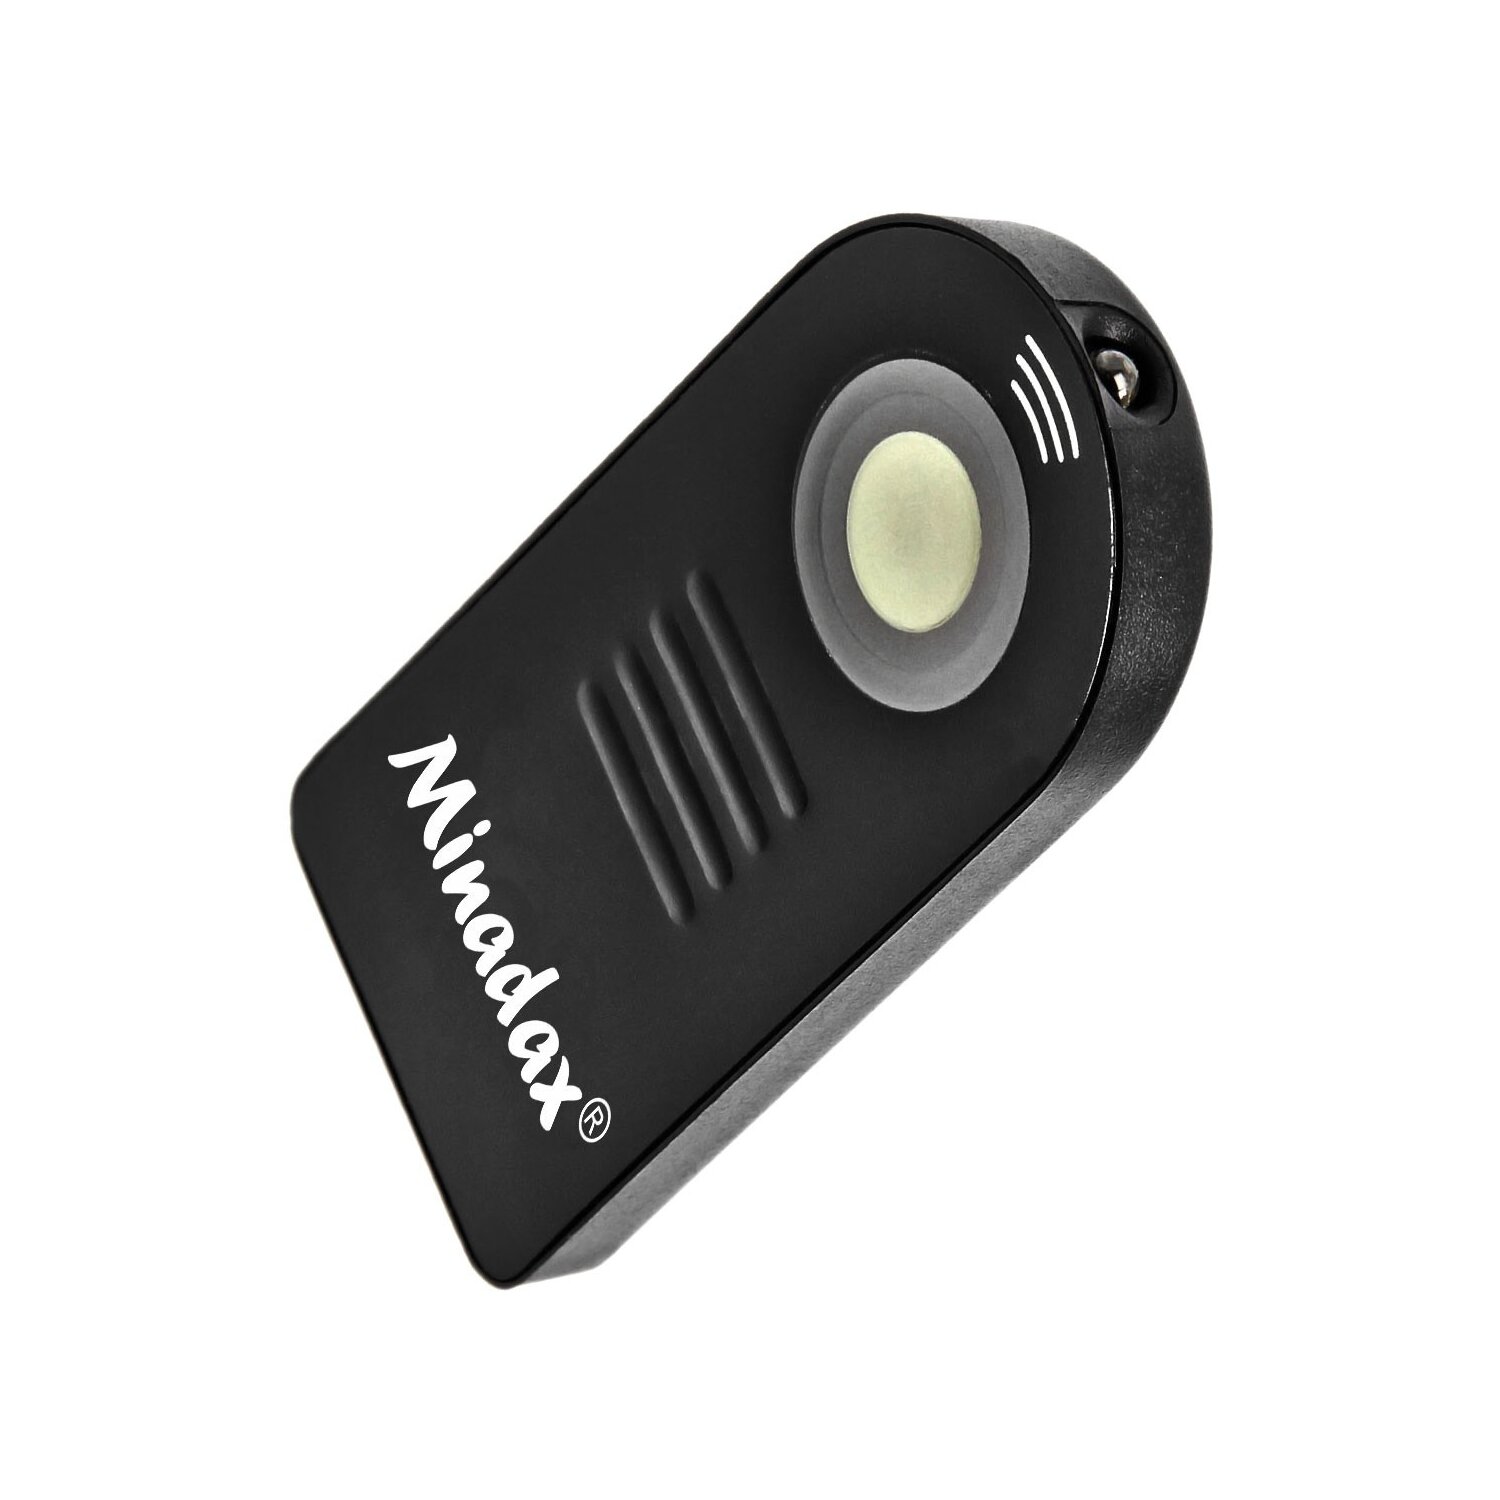 Minadax Infrared Trigger - Mini Remote Control for Nikon D5300 / D70 / D60 / D40 / D40x / D70 / D5000 / D5100 / D7000 / Coolpix 8800/8400 / P6000 / P7700 / Film SLR F75 / F75D / F65 / F65D / F55 / F55D as ML-L3